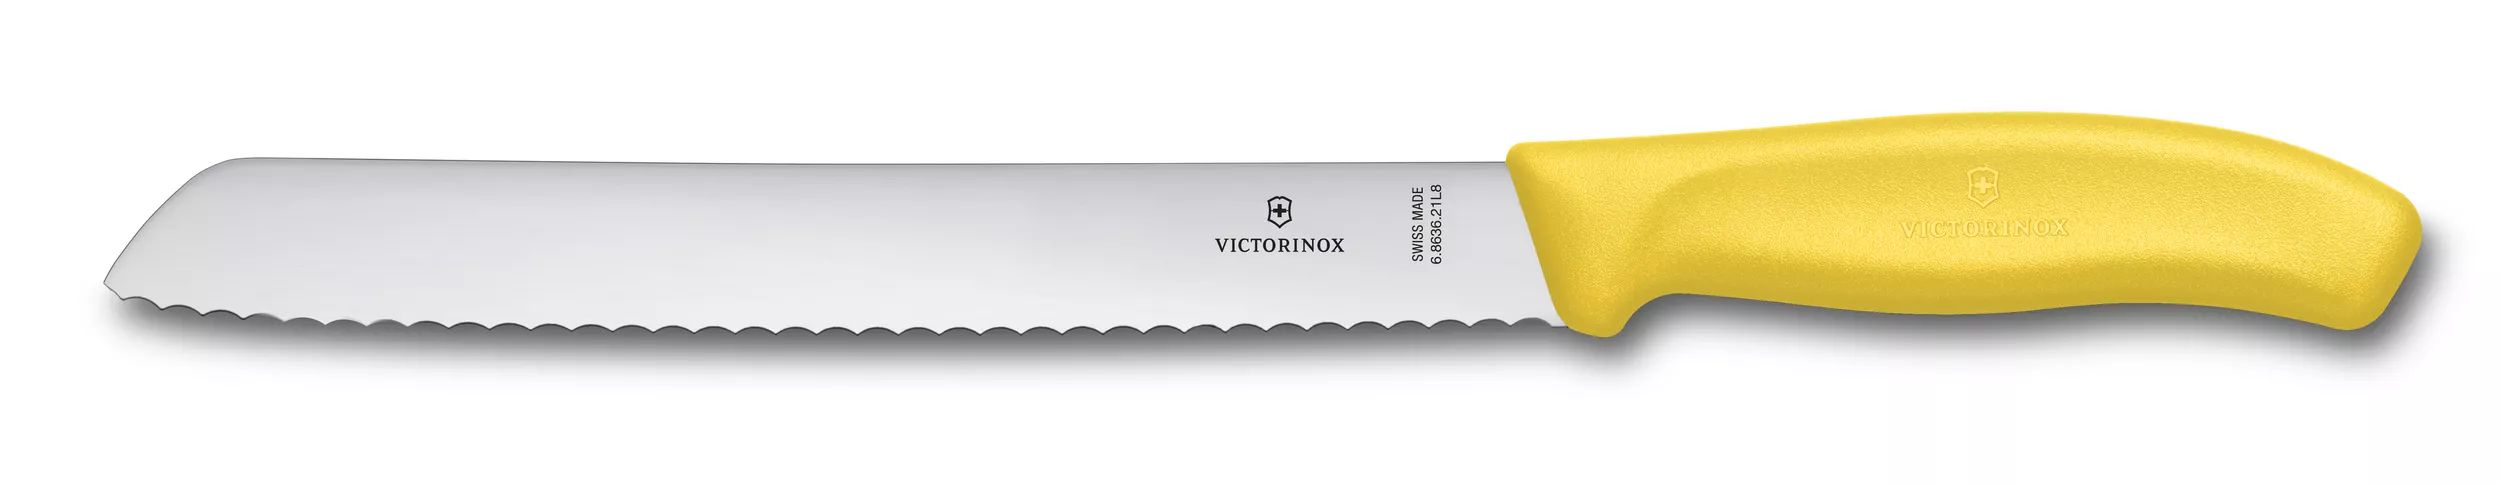 Swiss Classic 麵包刀-6.8636.21L8B